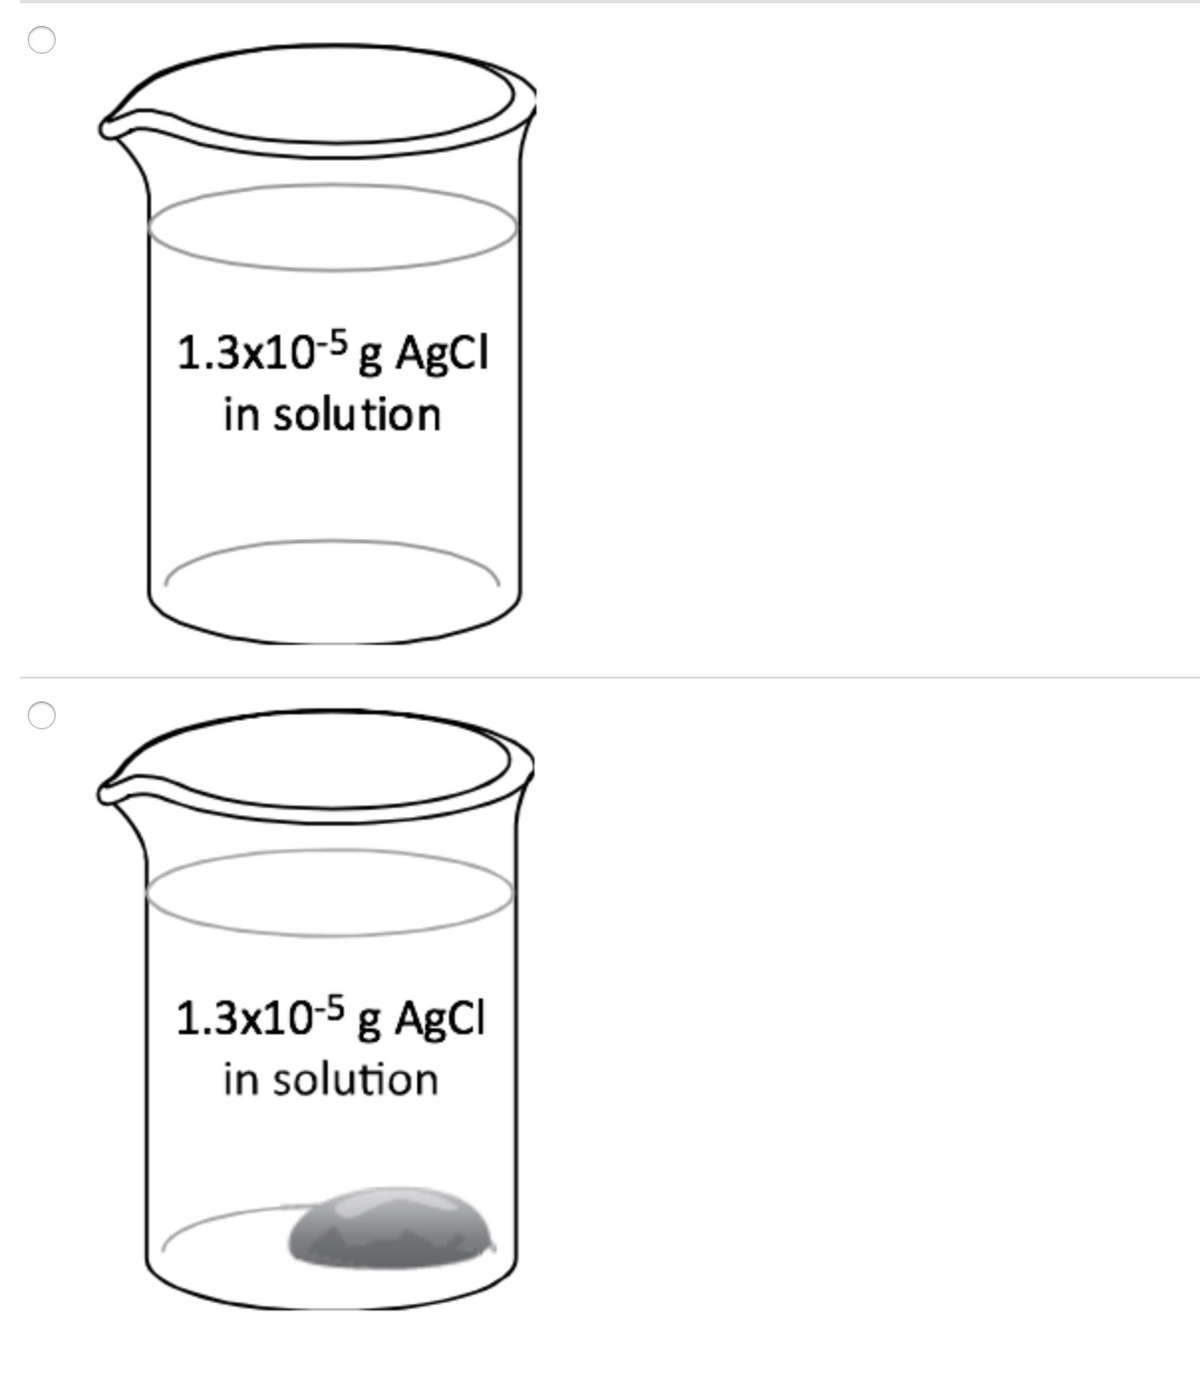 1.3x10-5 g AgCl
in solution
1.3x10-5 g AgCl
in solution
